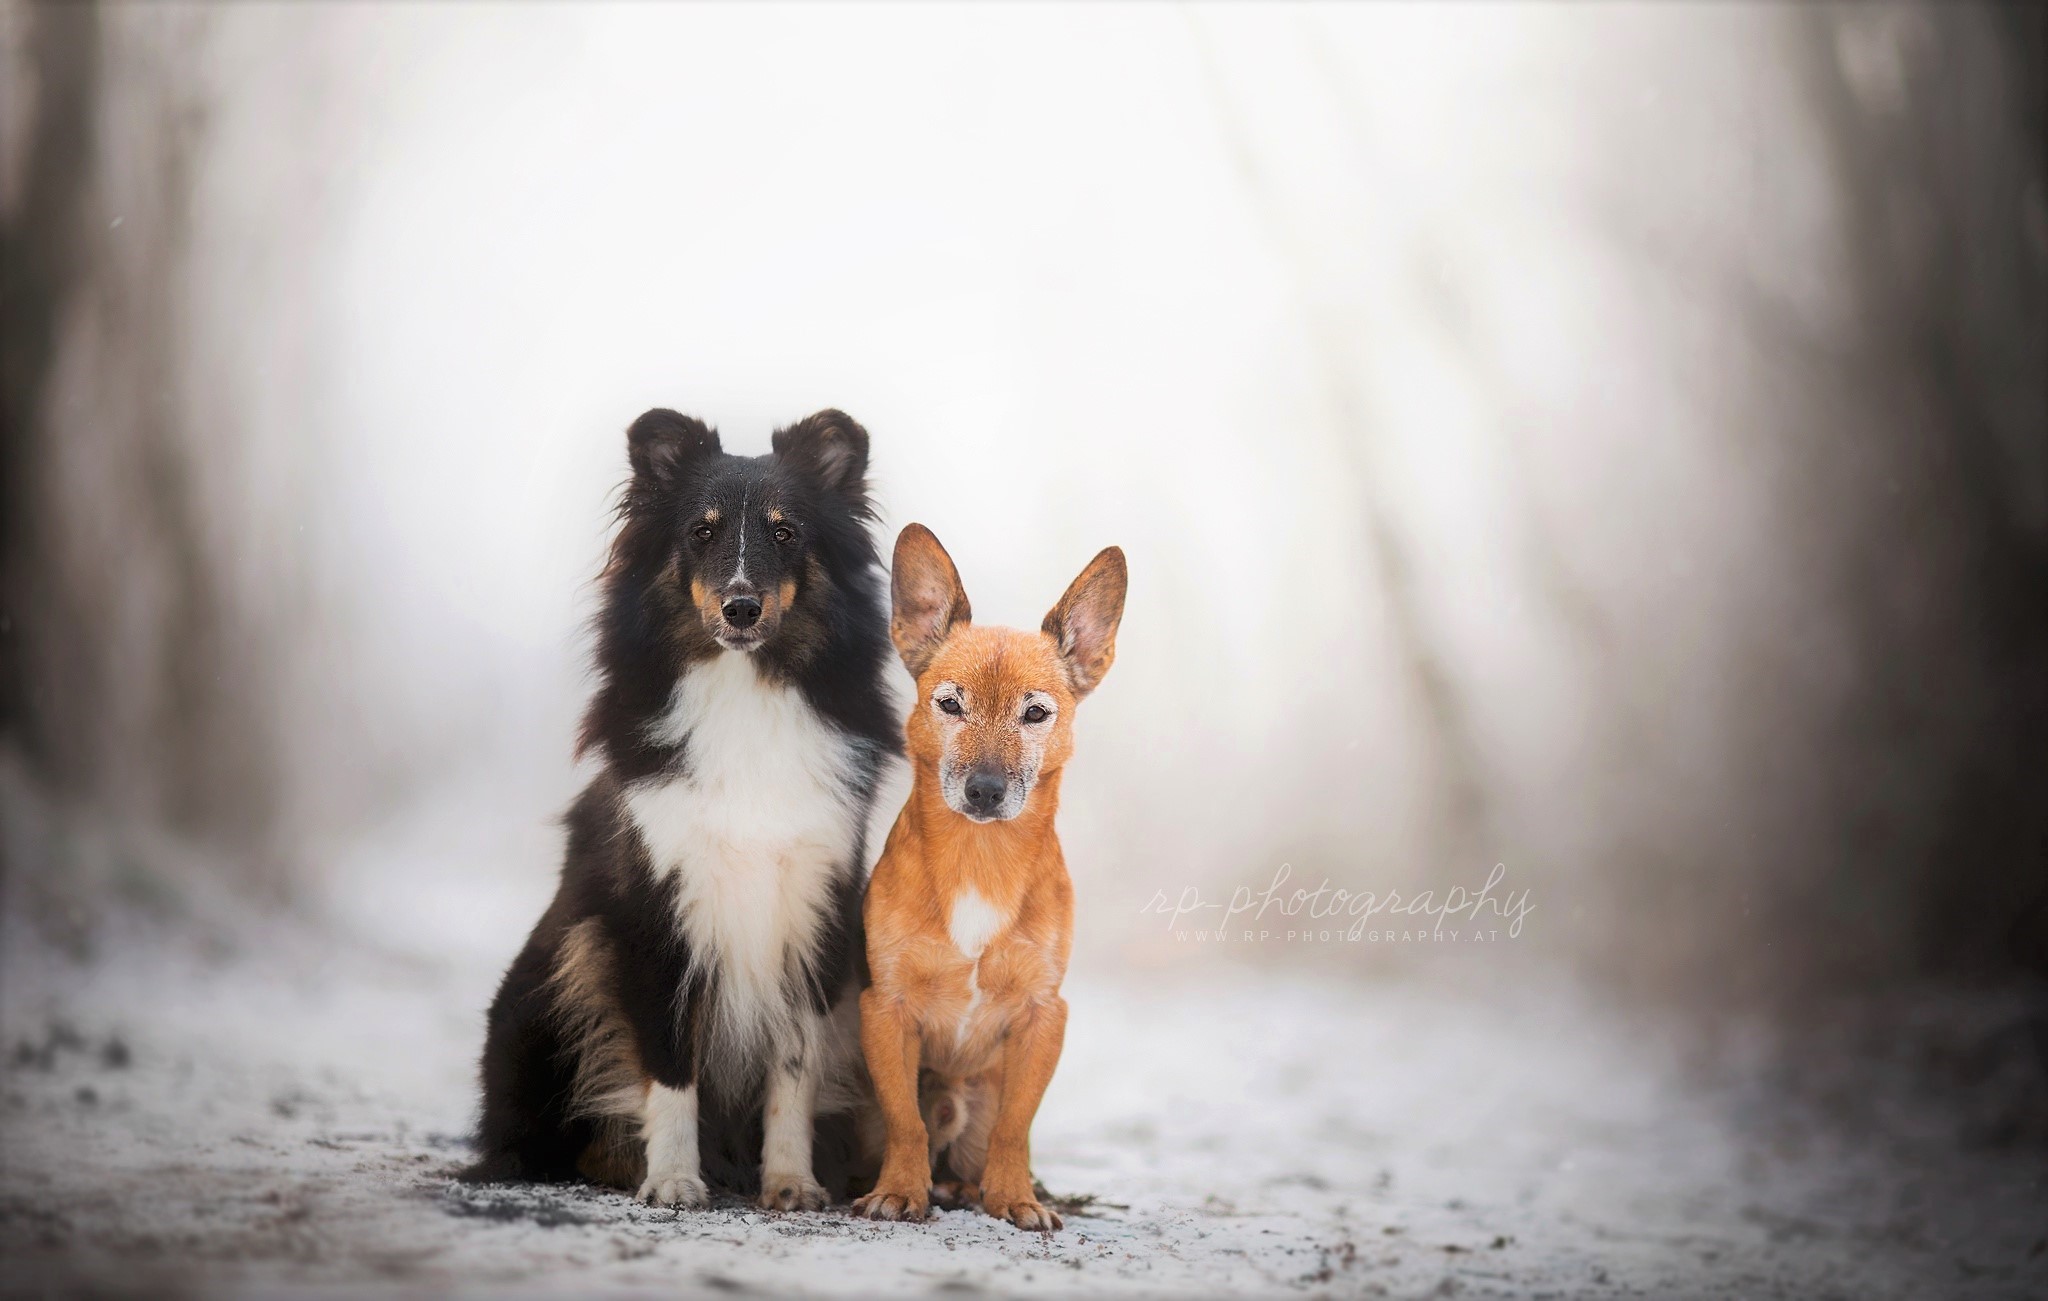 Dogs in Winter by Dackelpup